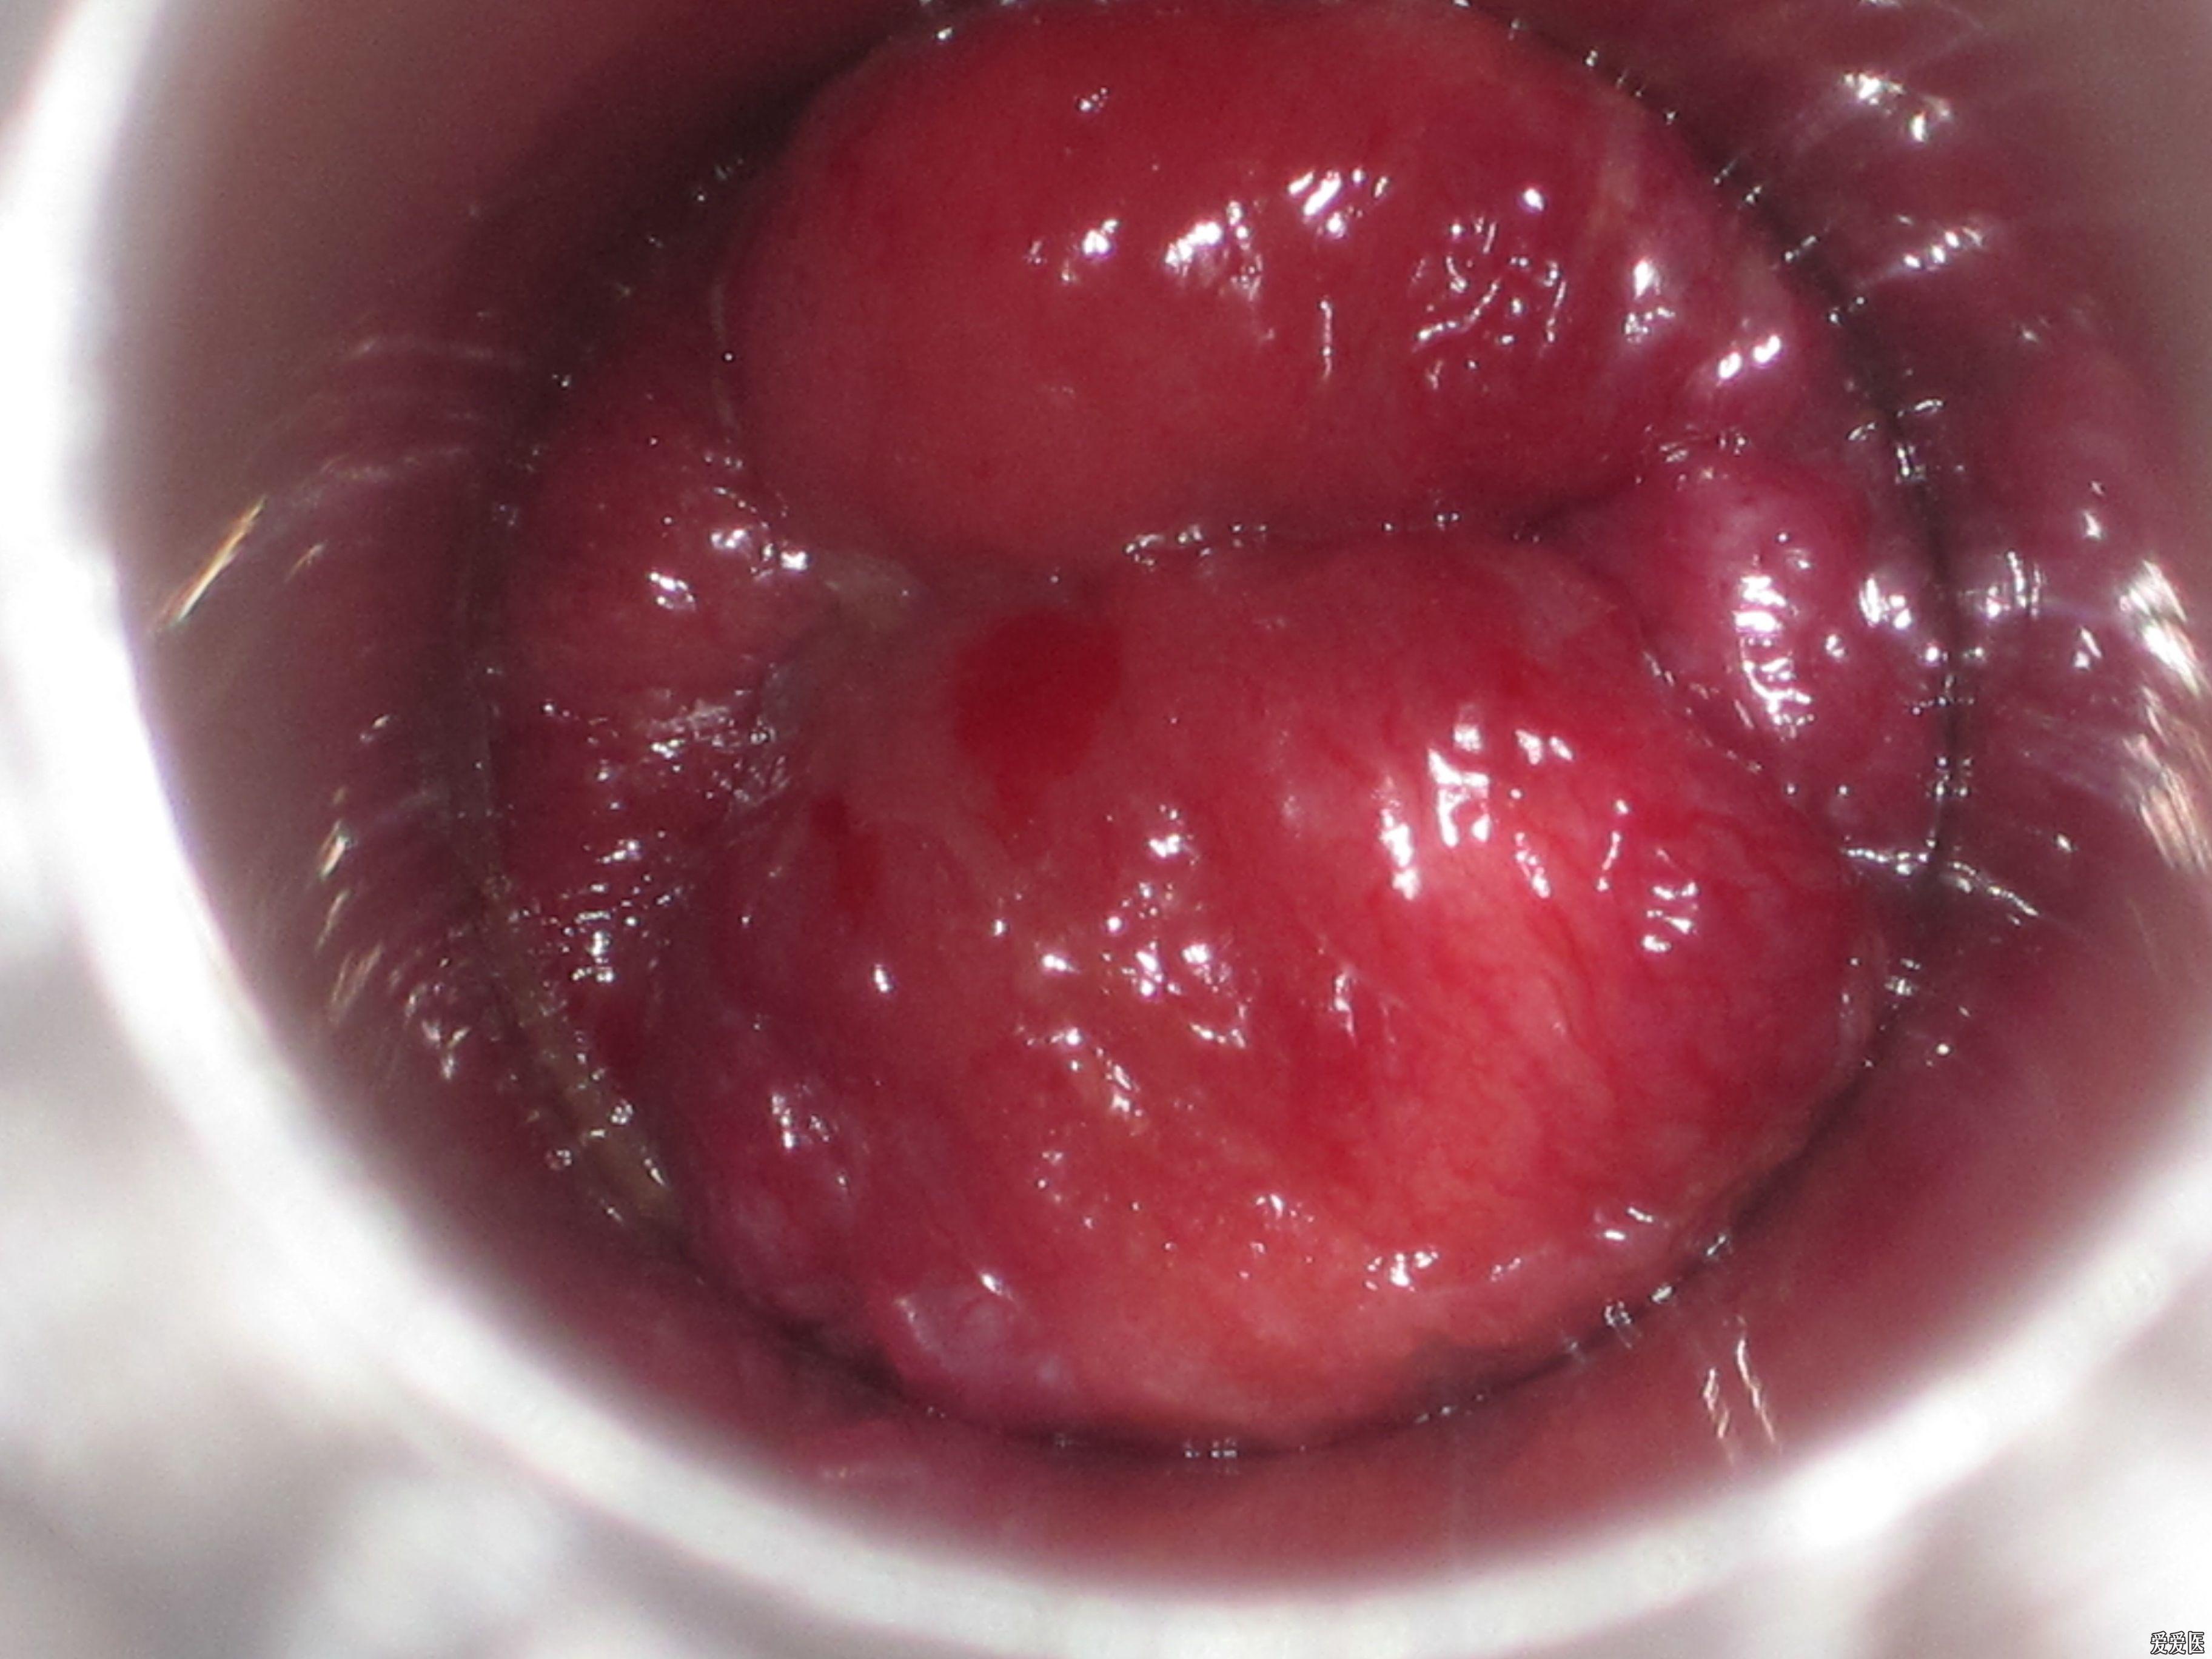 三期环状结缔组织性混合痔术前术后图片欣赏第七例